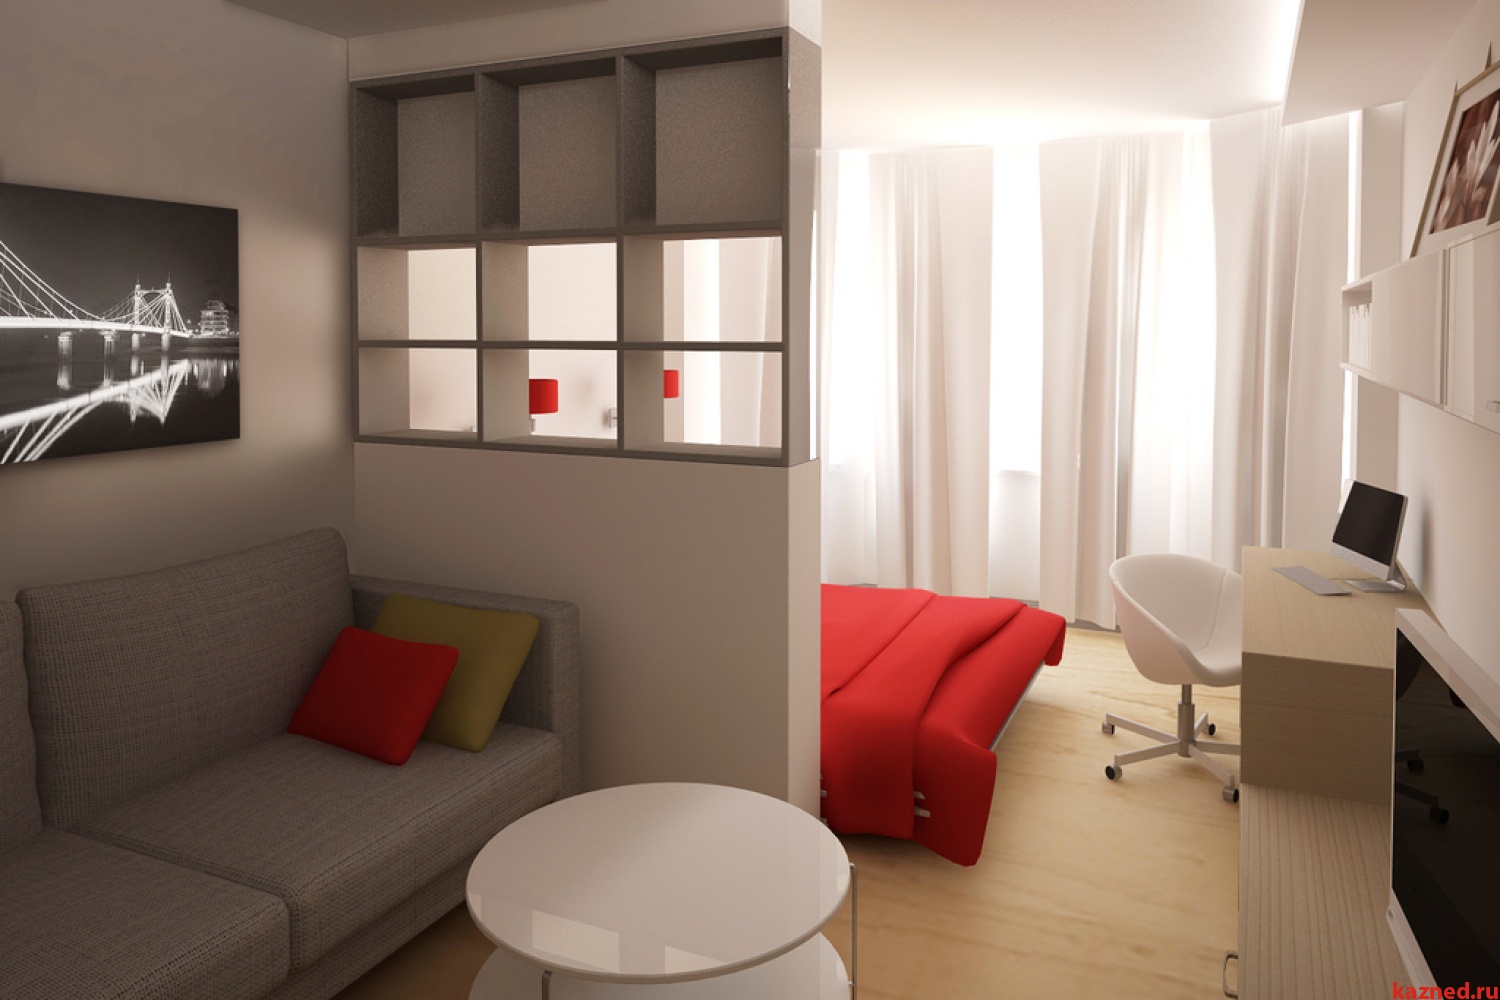 Гостиная и спальня в одной комнате: 6 идей для зонирования пространства